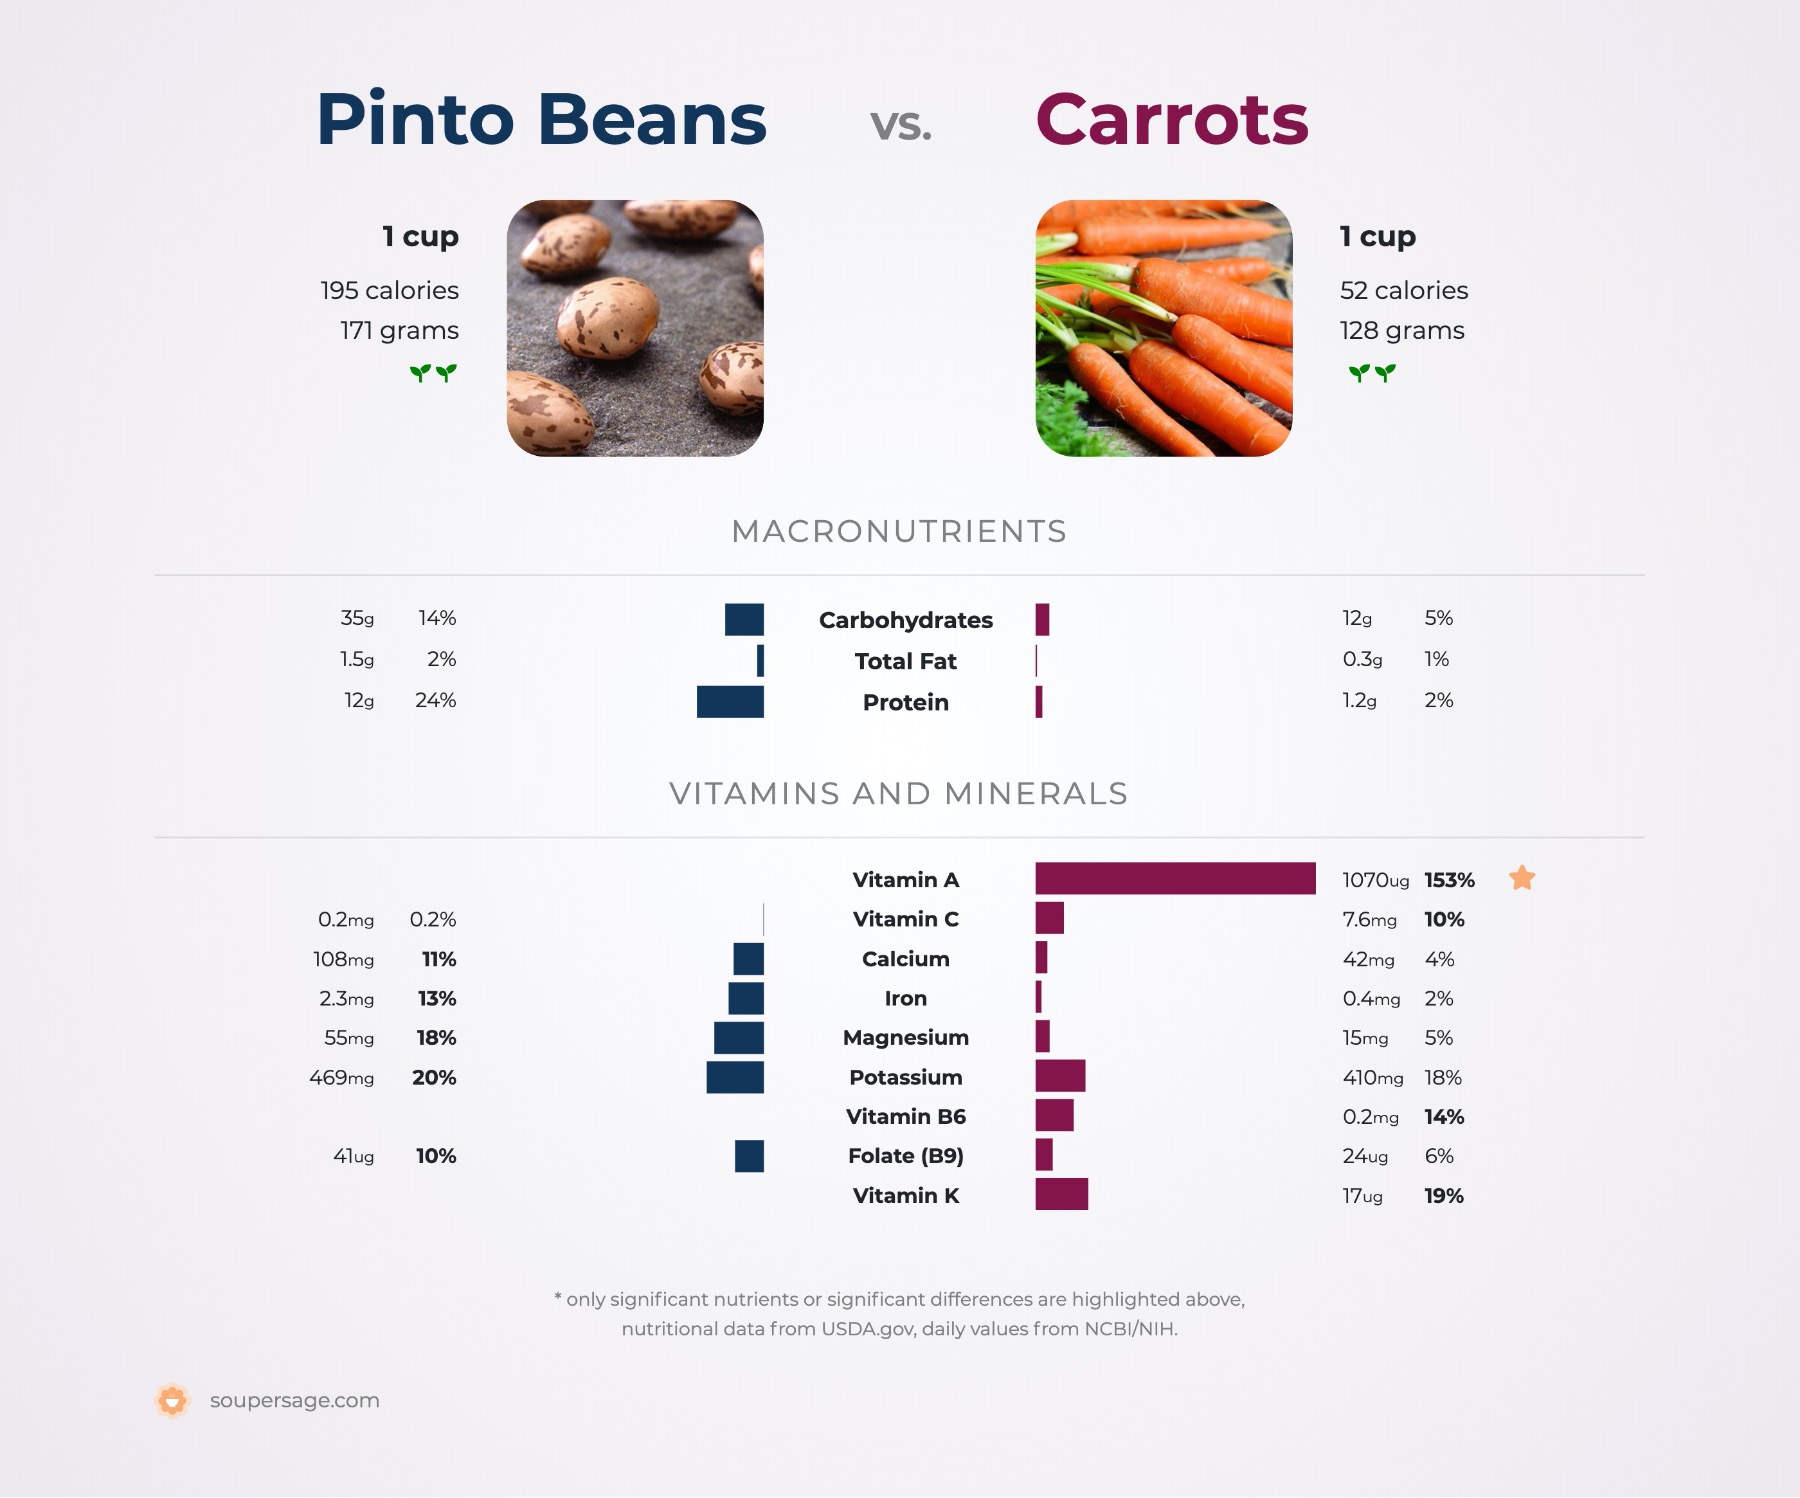 nutrition comparison of pinto beans vs. carrots